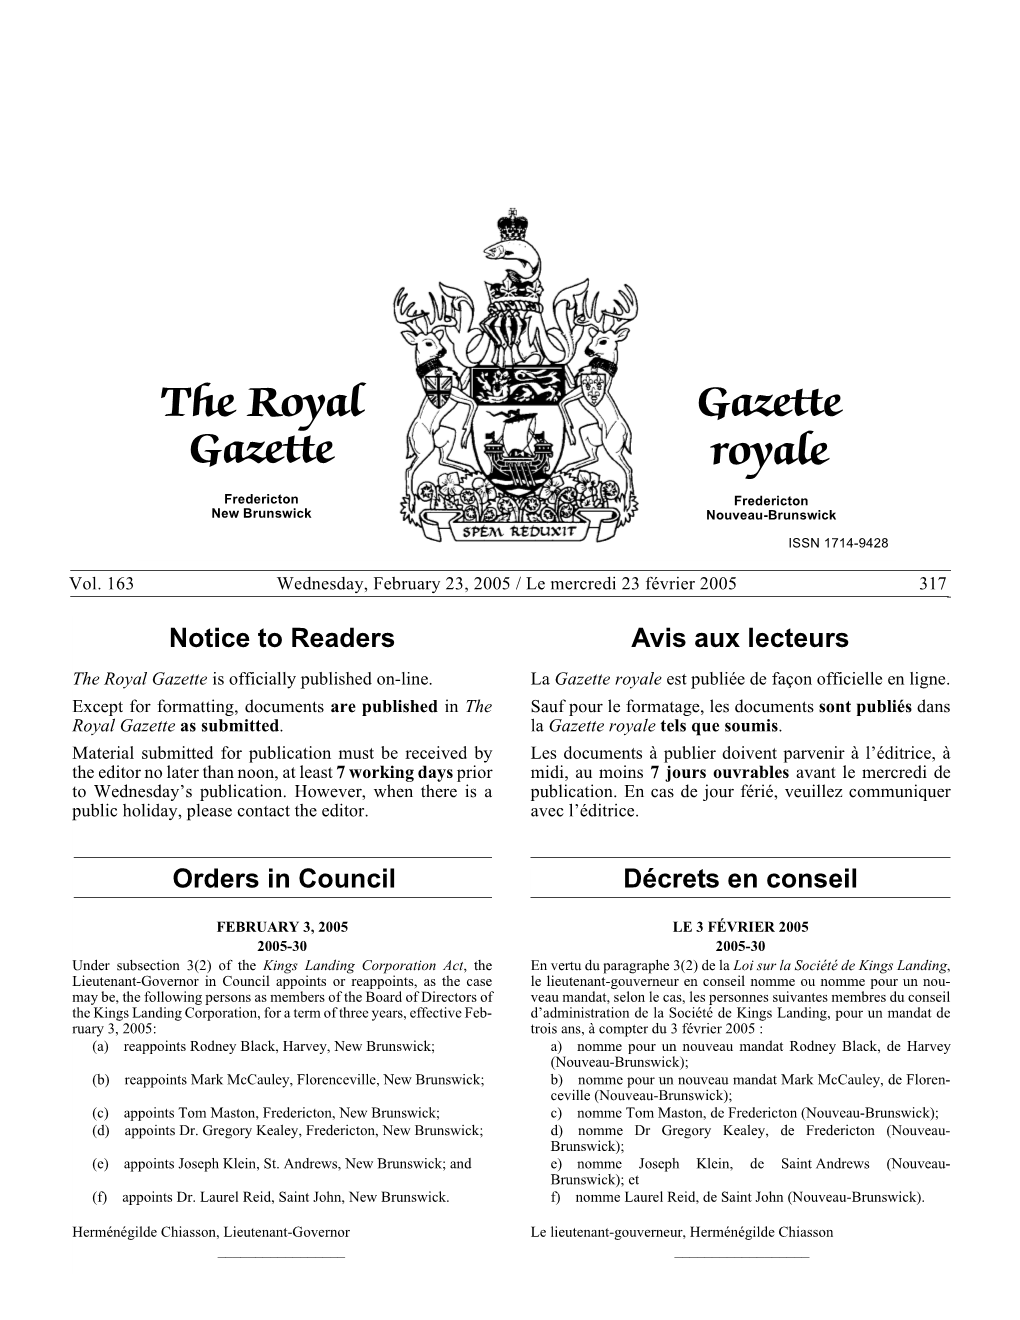 The Royal Gazette / Gazette Royale (05/02/23)